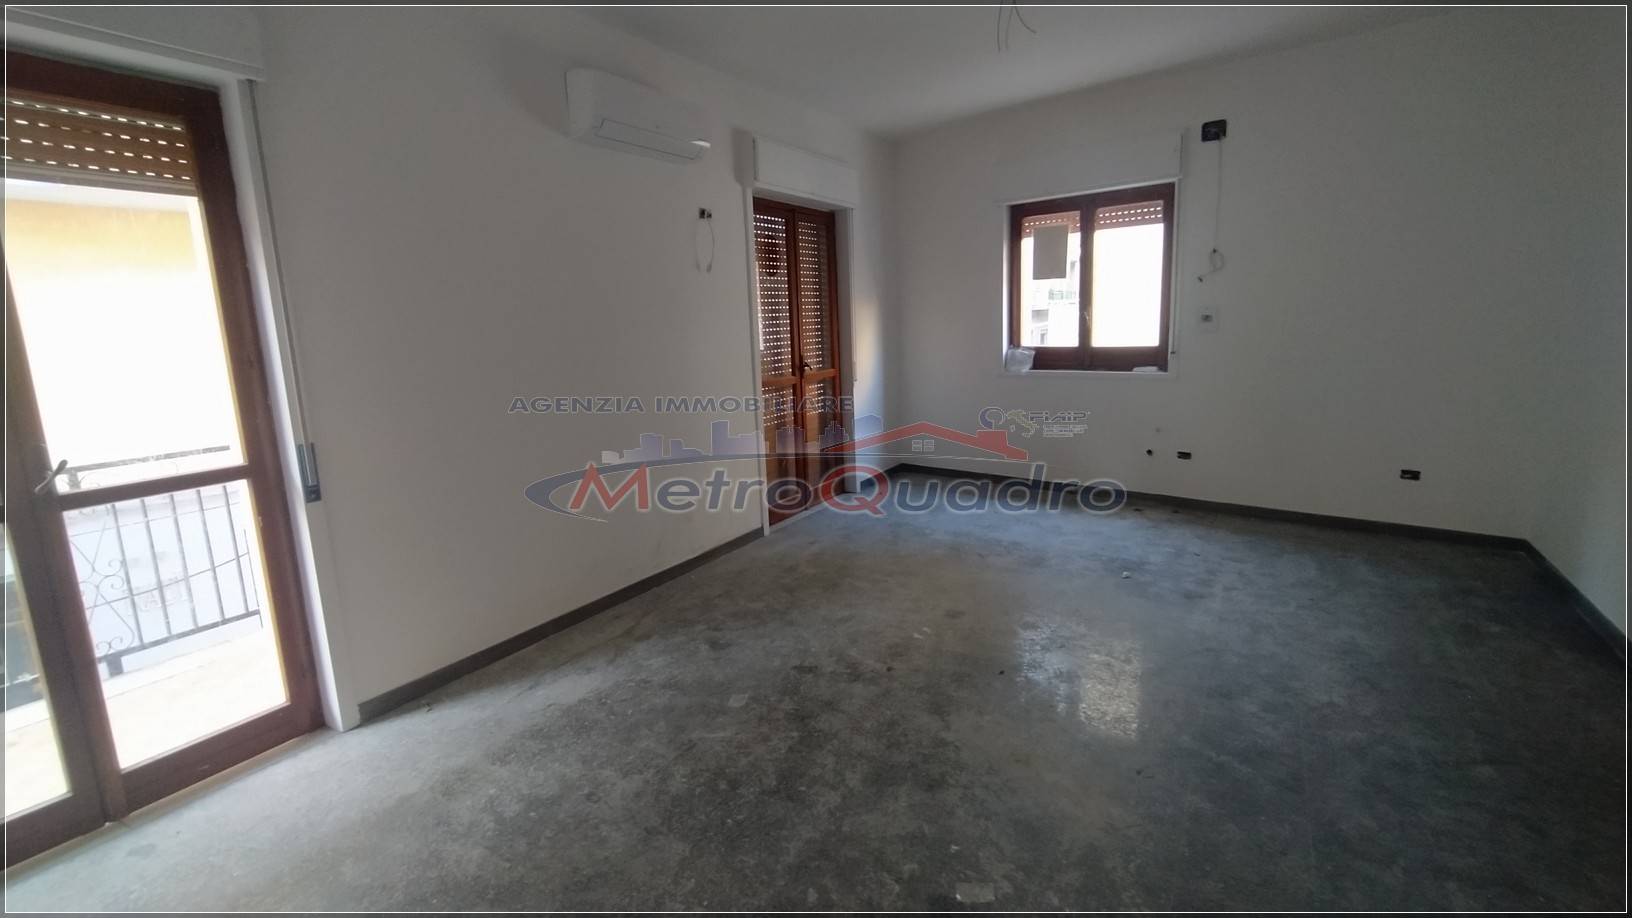 Appartamento in affitto a Canicattì, 3 locali, zona Località: C 3 ZONA VILLA COMUNALE, prezzo € 350 | CambioCasa.it